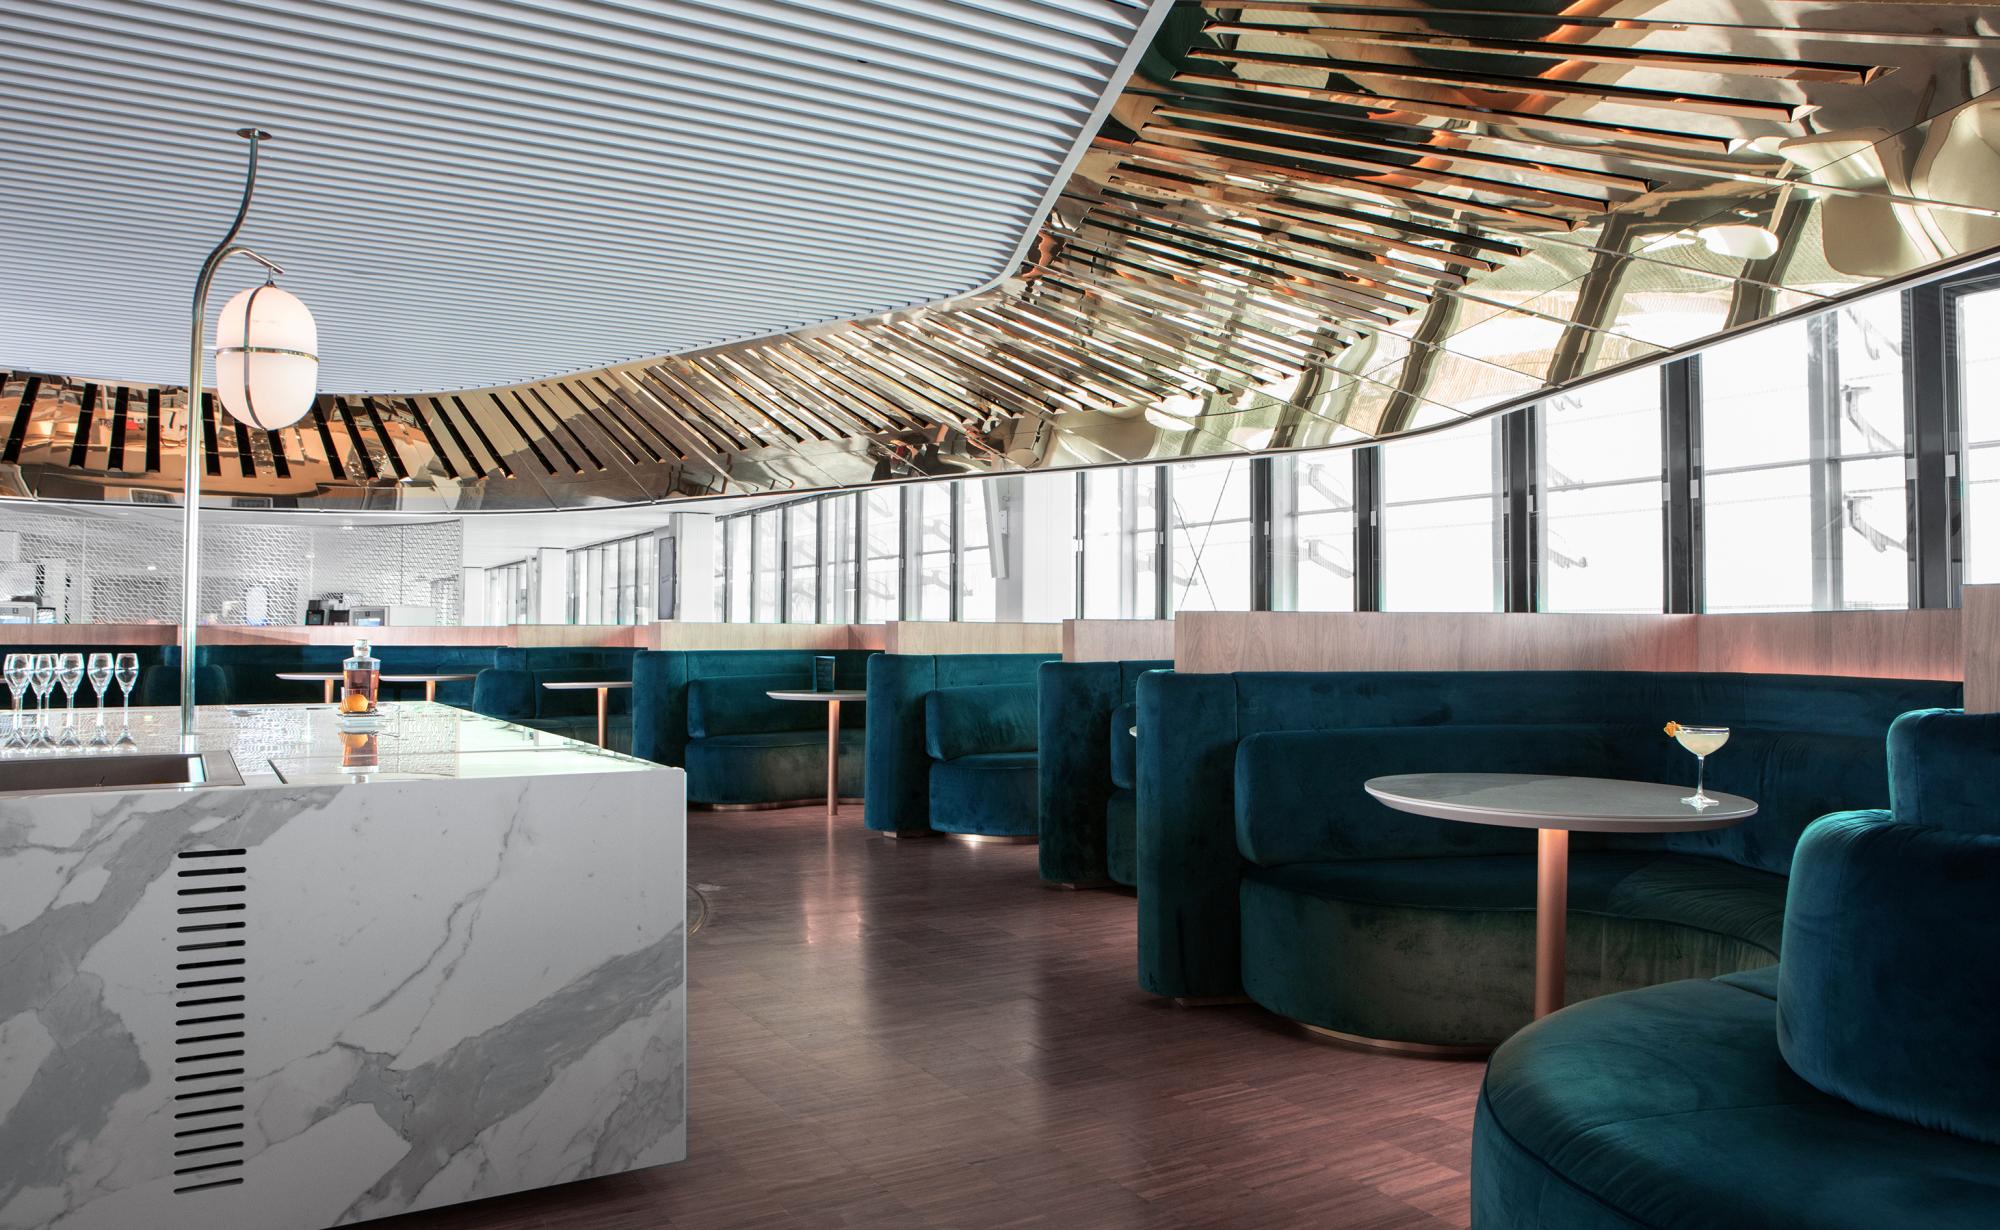 le balcon designed by mathieu lehanneur for air france business lounge paris